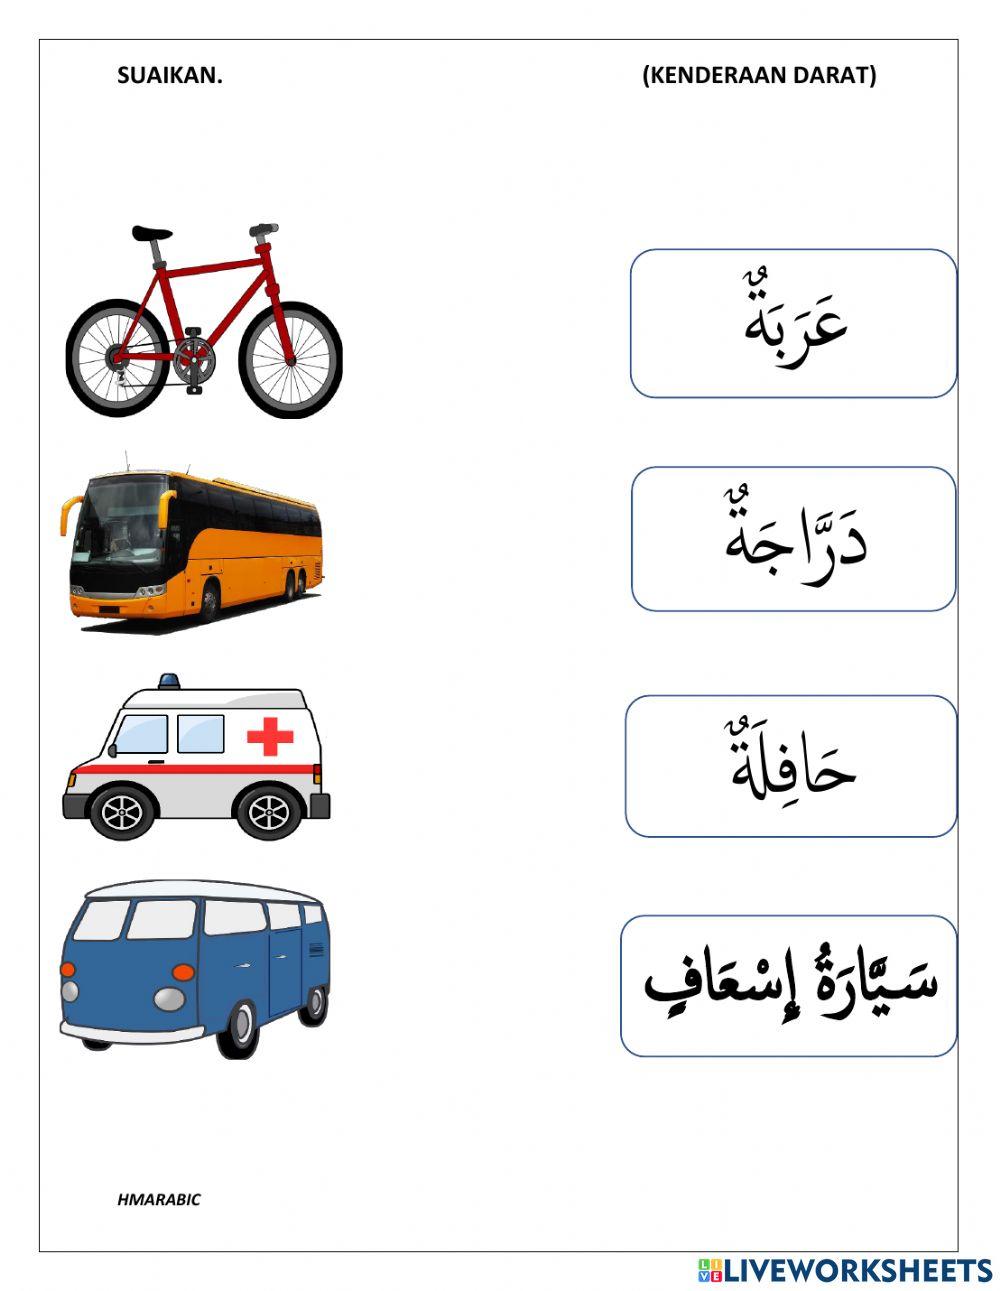 Kenderaan darat bahasa arab